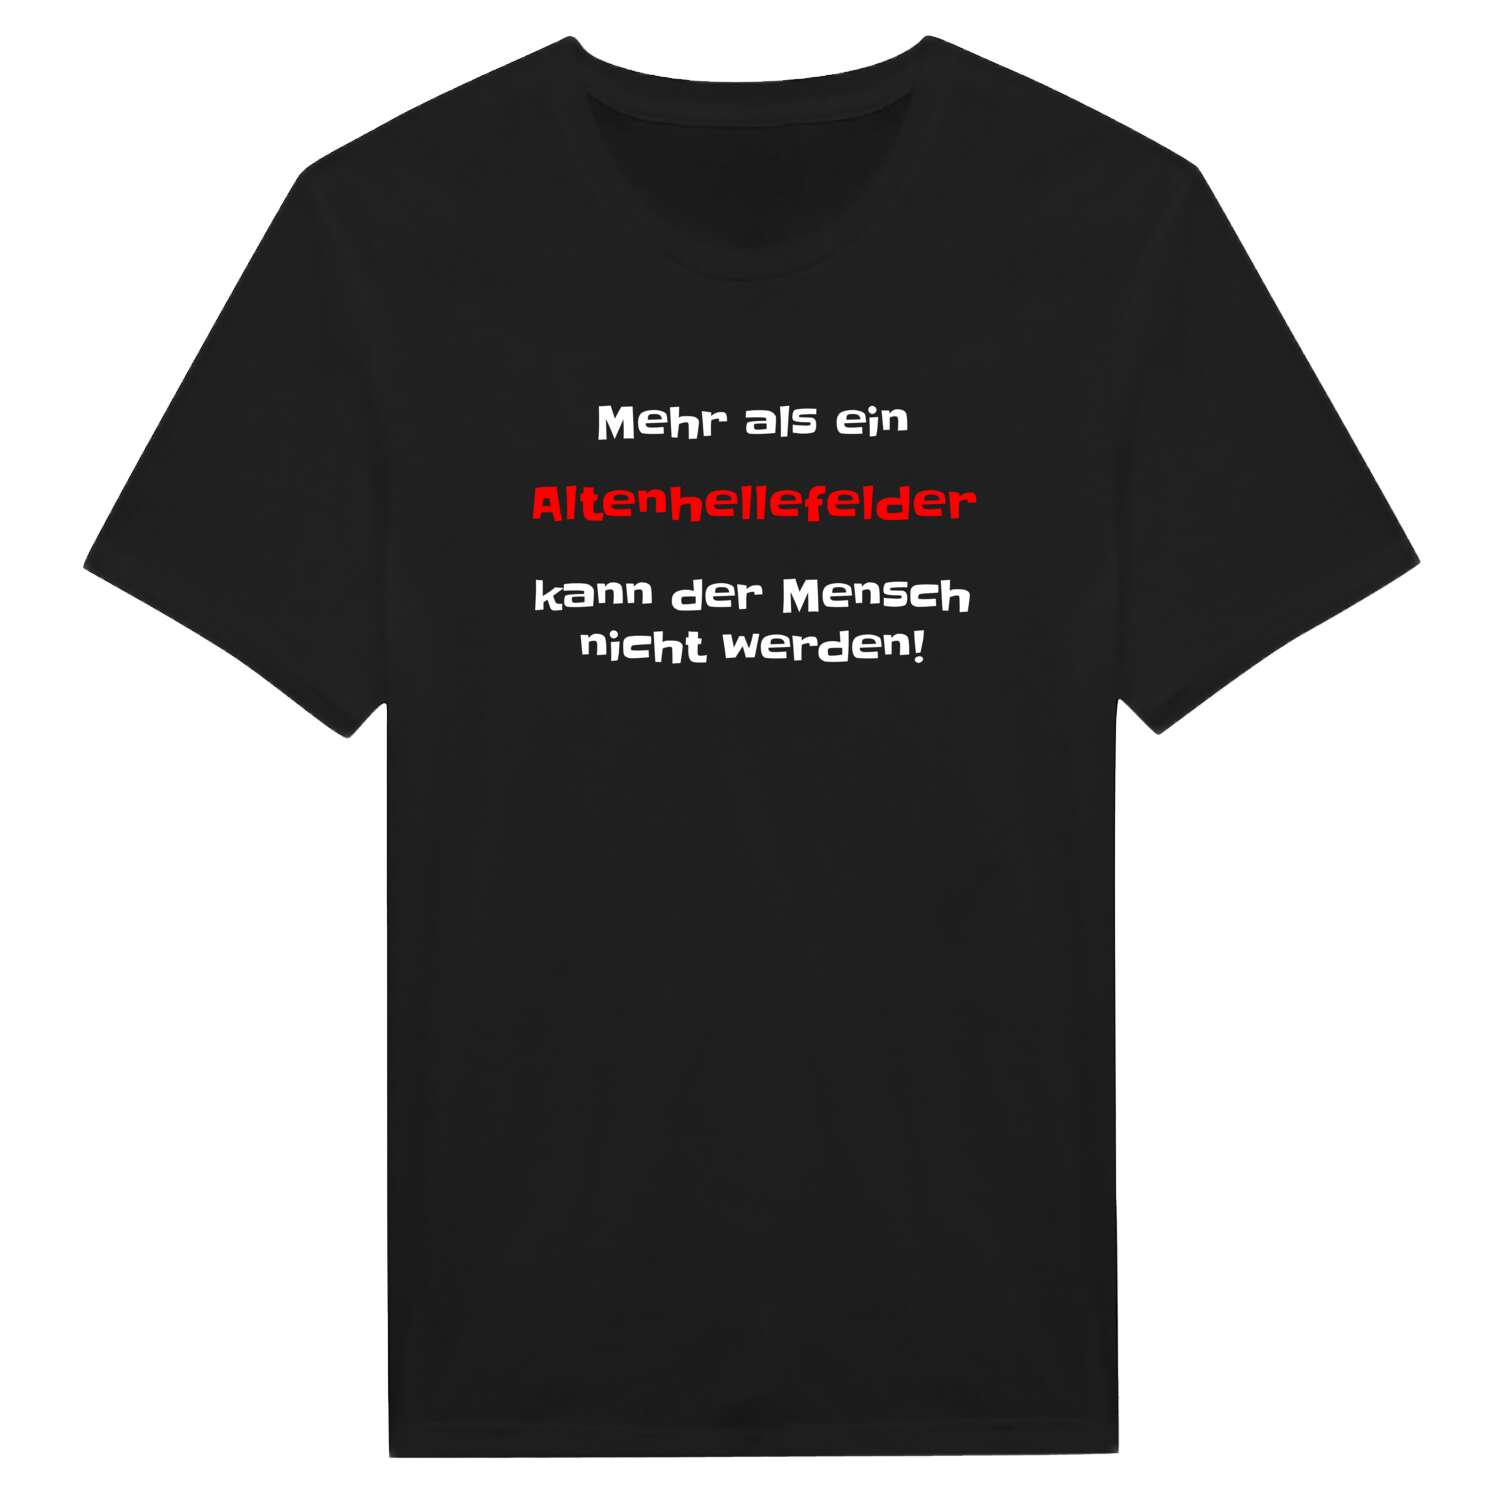 Altenhellefeld T-Shirt »Mehr als ein«